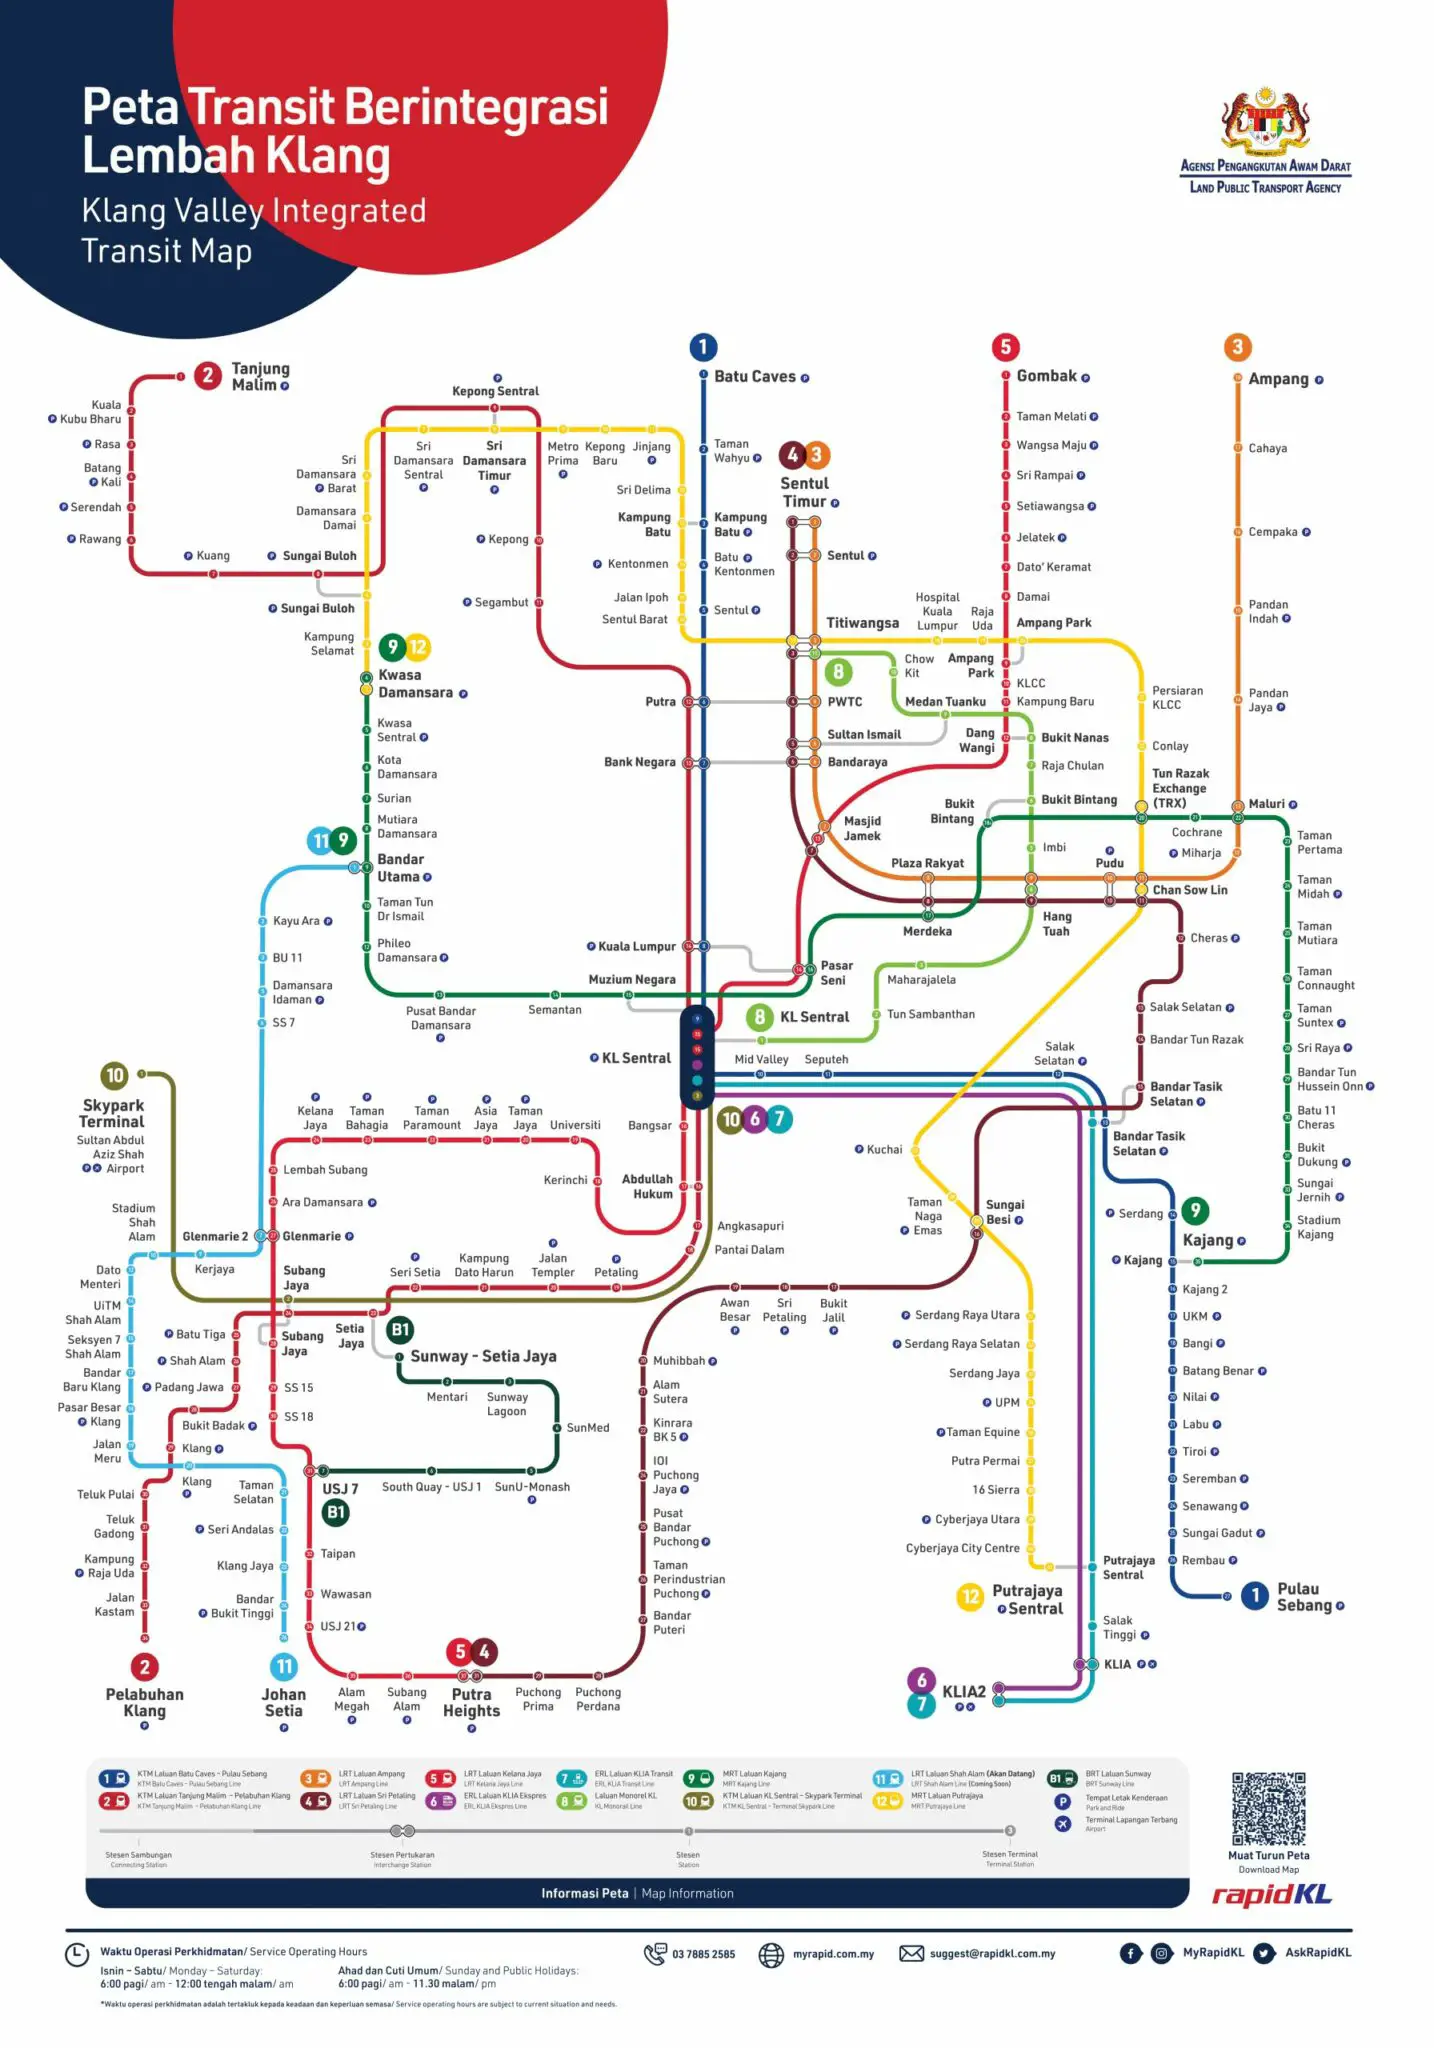 Pengangkutan Awam di Malaysia: MRT, LRT, KTM, Monorel, BRT